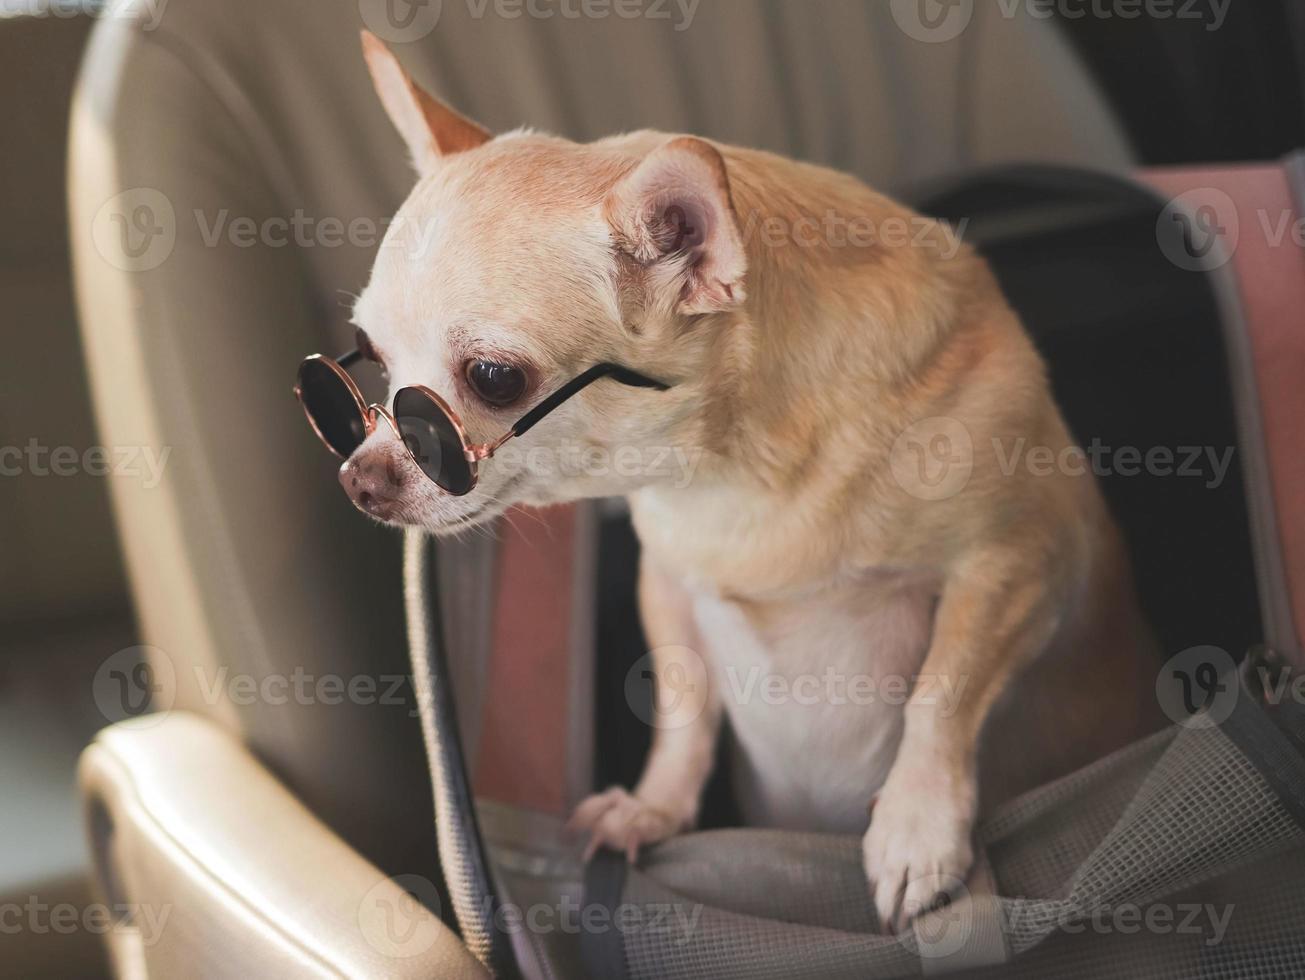 Marrone chihuahua cane indossare occhiali da sole in piedi nel viaggiatore animale domestico vettore Borsa nel auto posto a sedere. sicuro viaggio con animale domestico concetto. foto